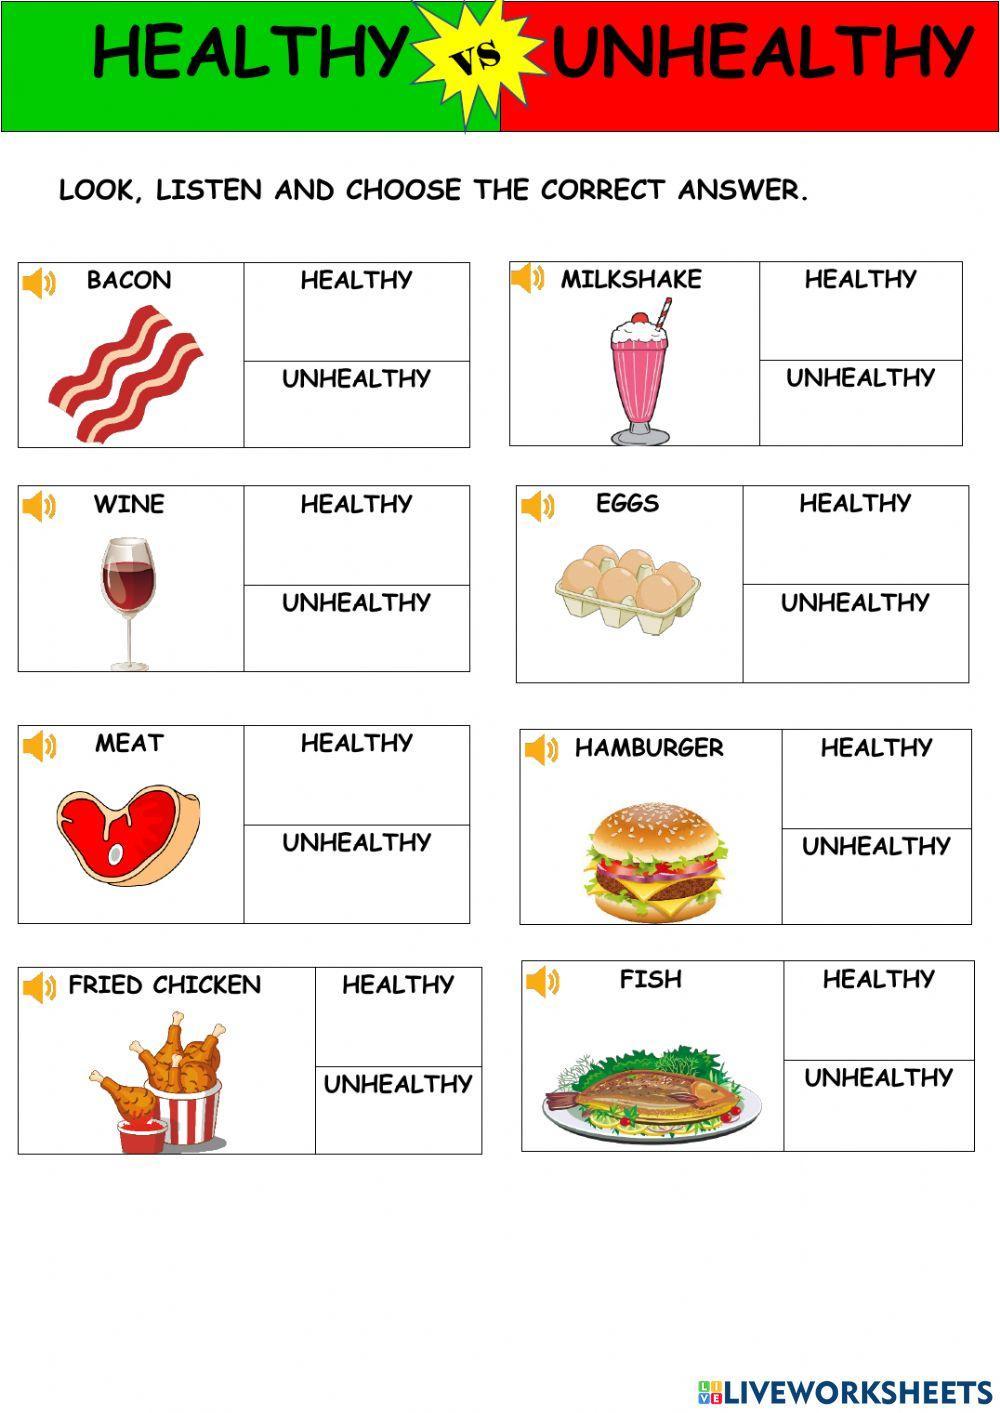 Healthy versus Unhealthy Food